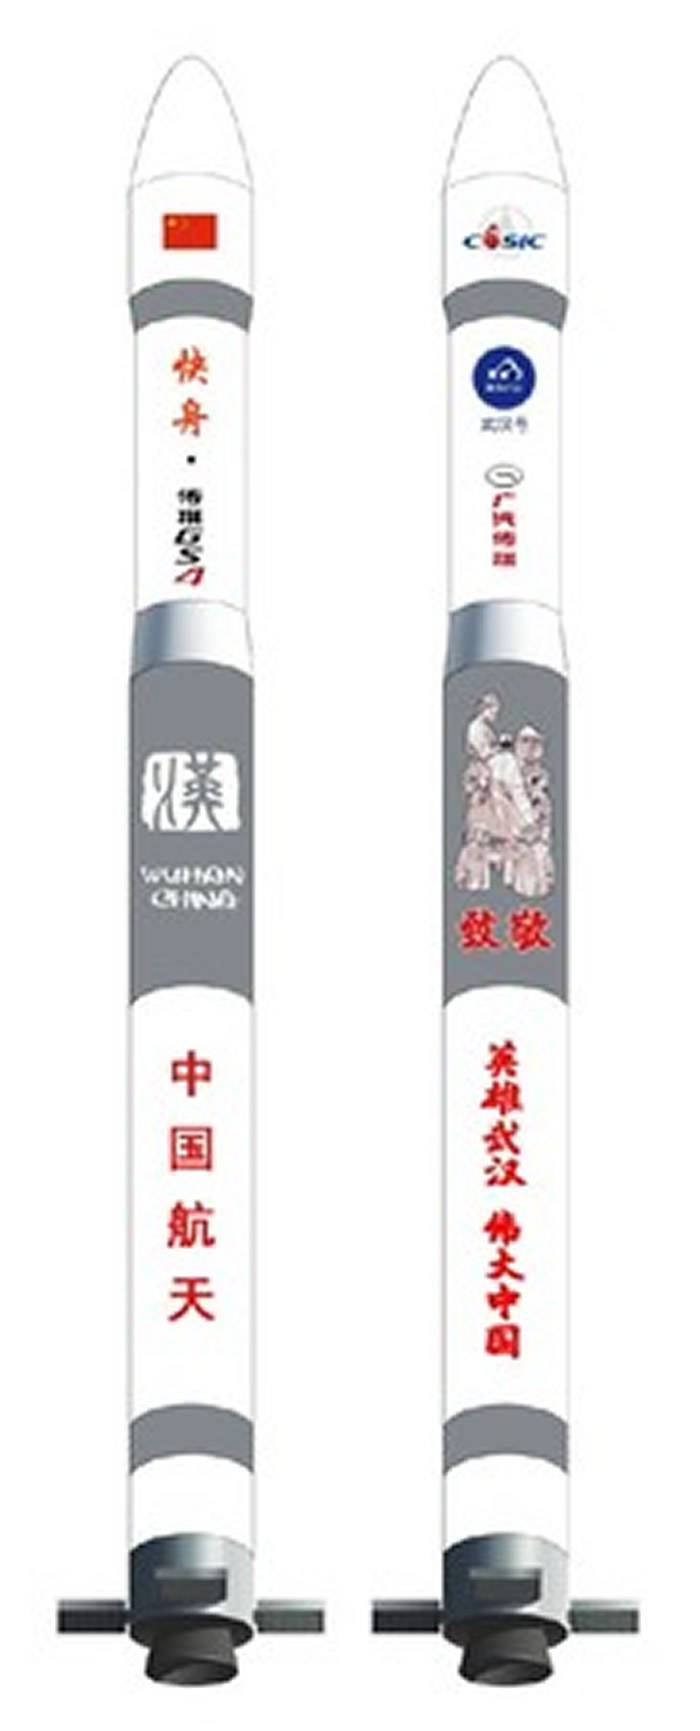 中国4月发射行云二号卫星“武汉号” 火箭身设计向医护人员致敬